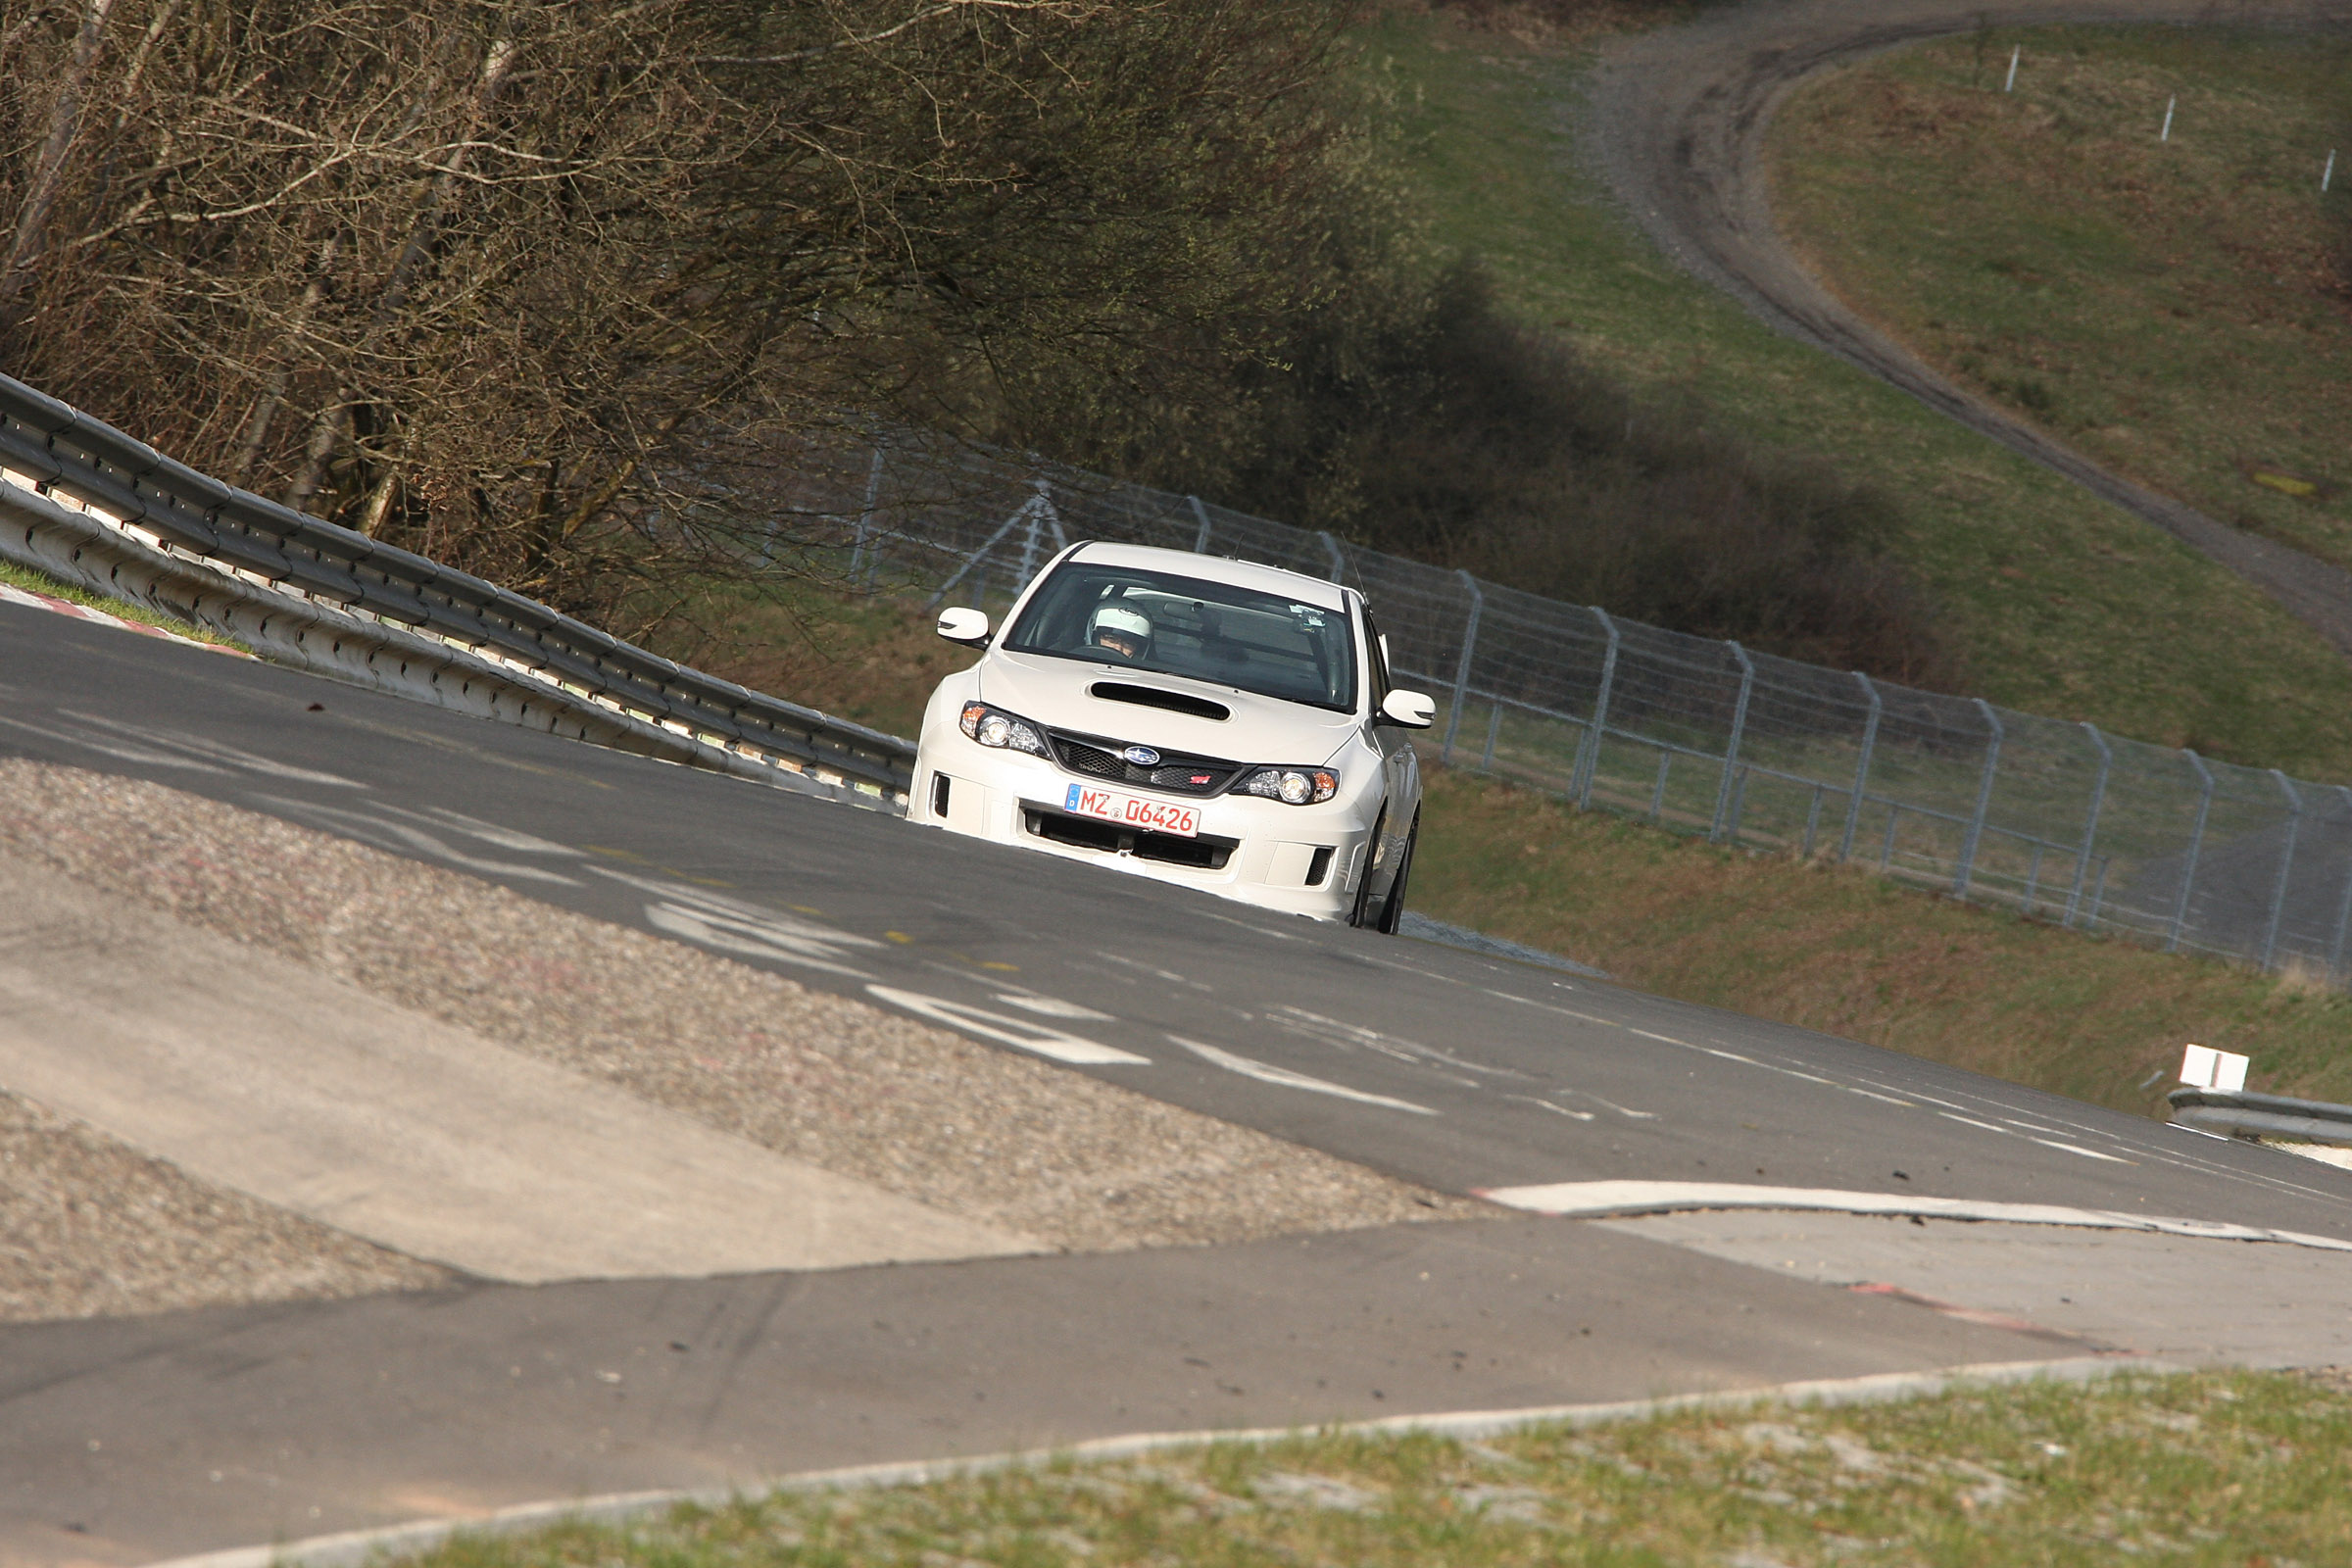 2011 Subaru WRX STI 4-door at Nordschleife Nurburgring Germany